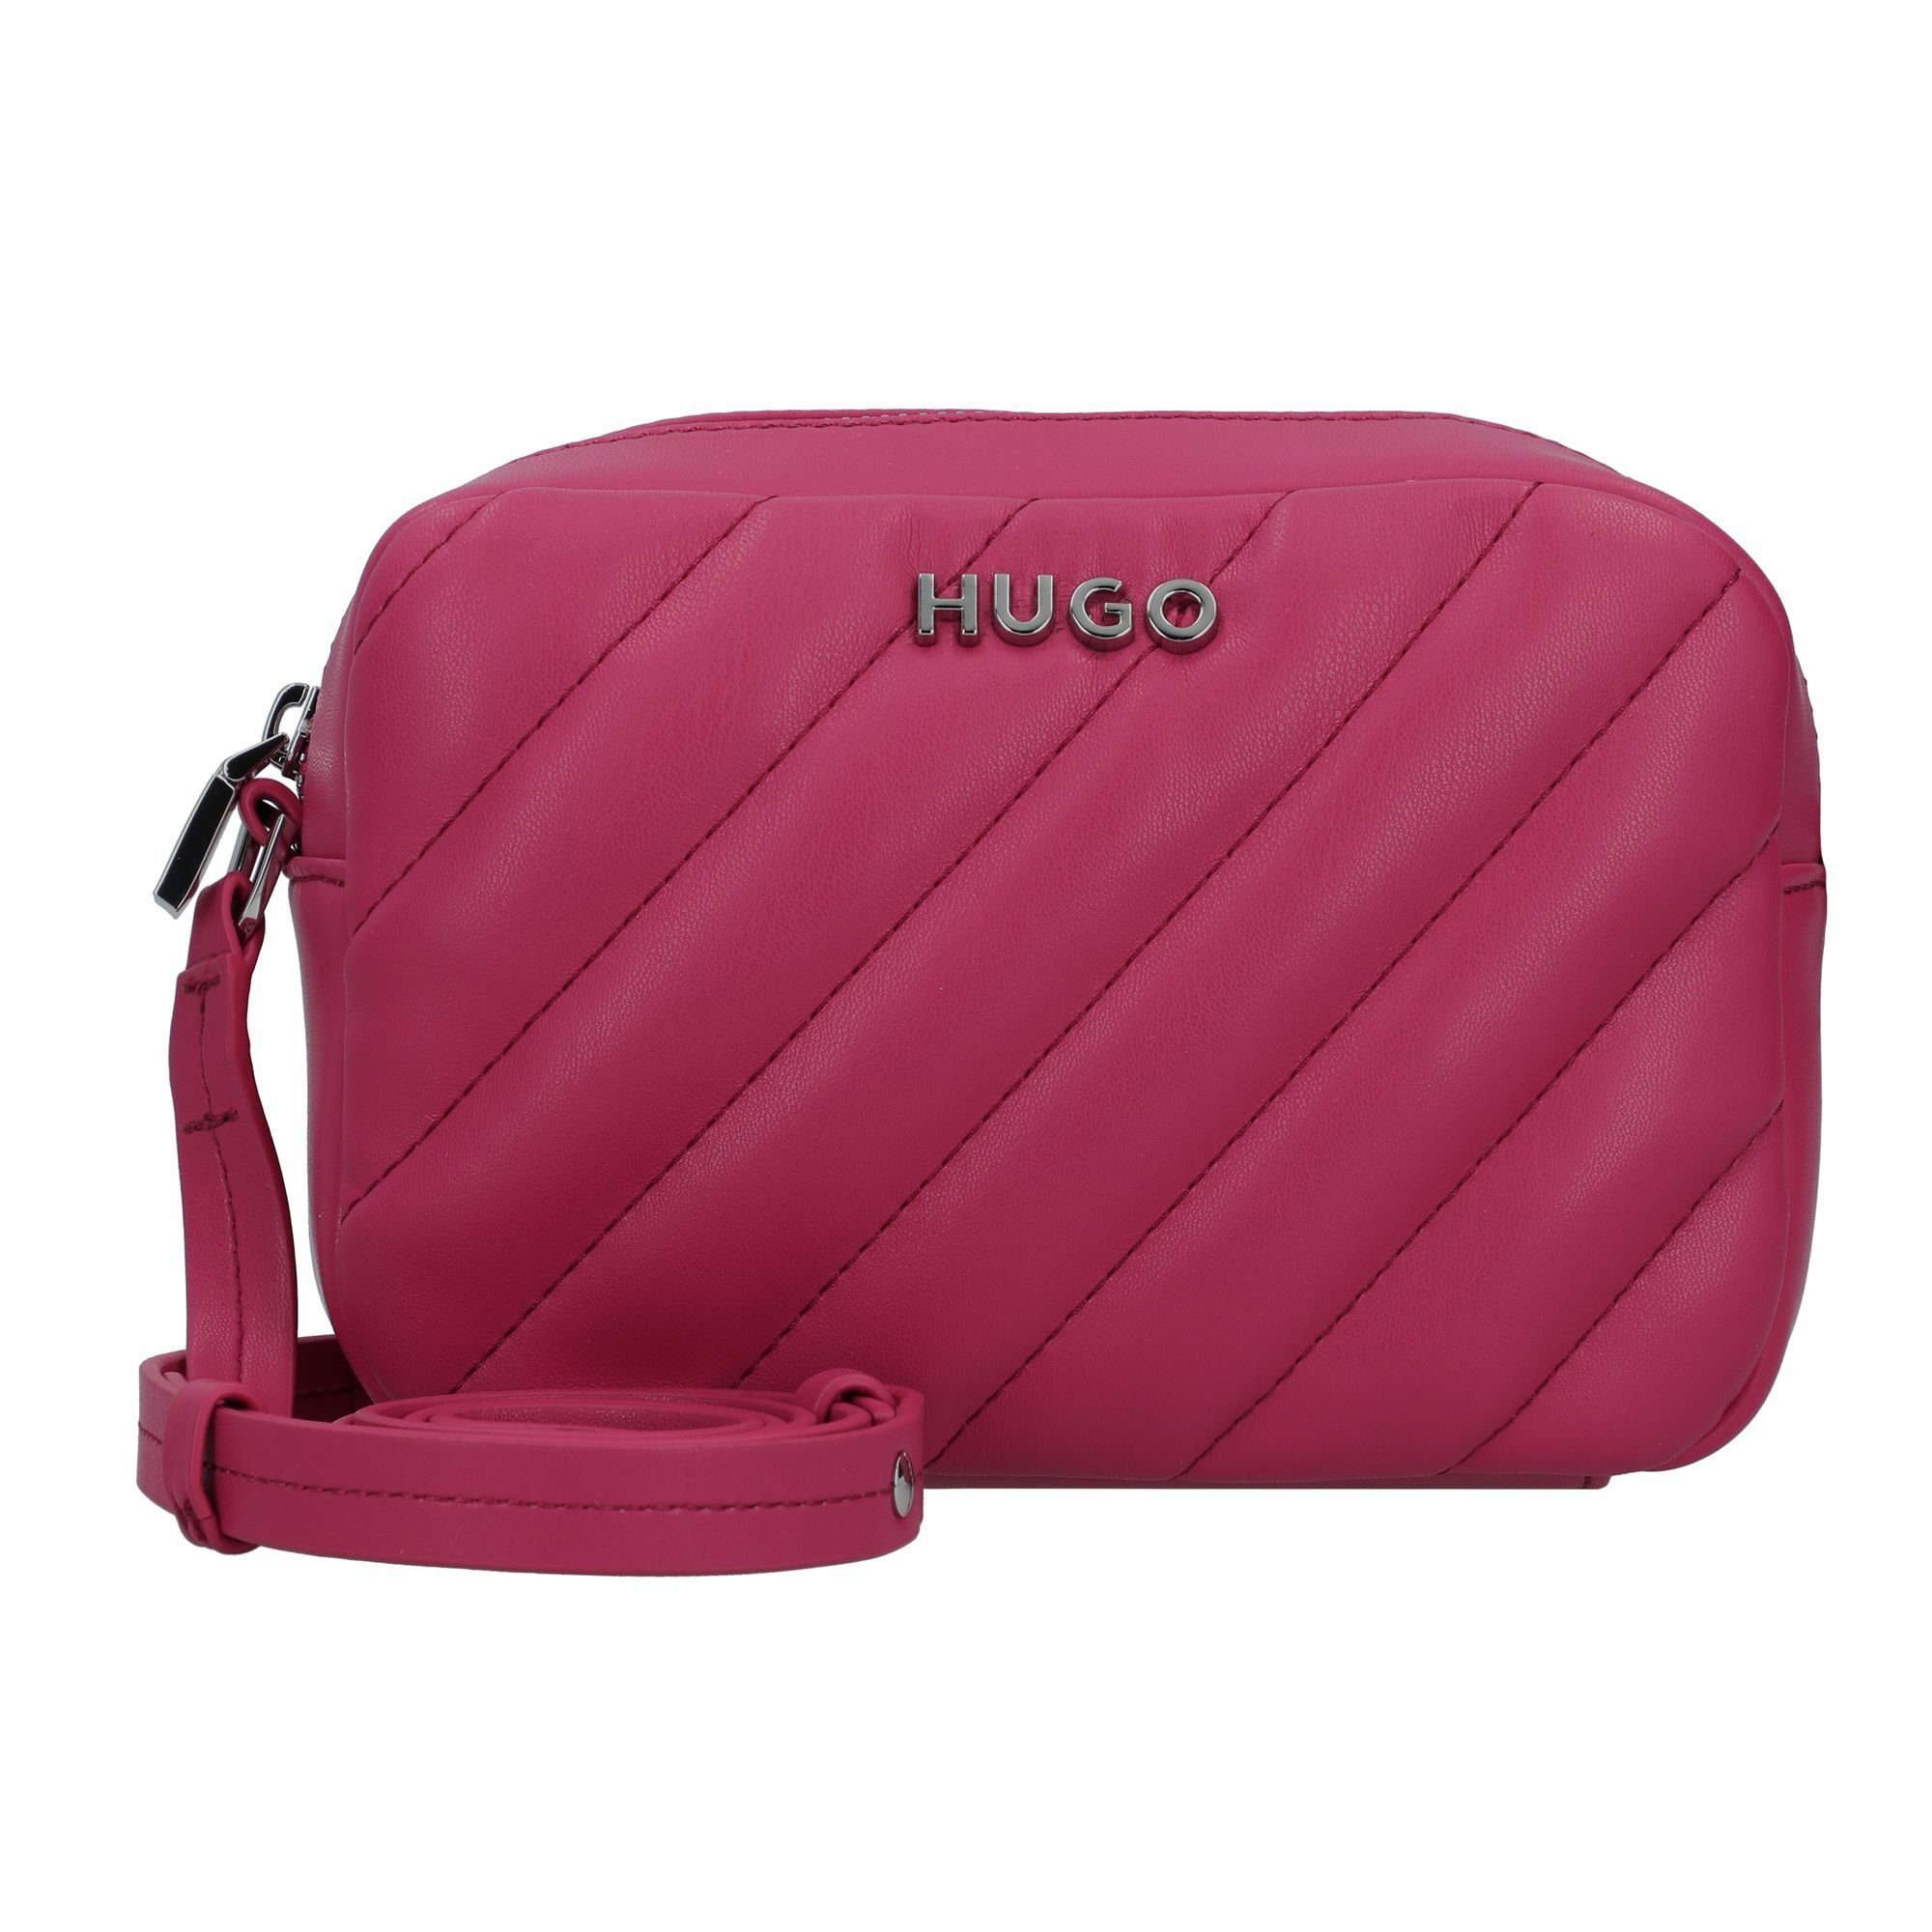 Hugo Boss Damen Umhängetaschen online kaufen | OTTO